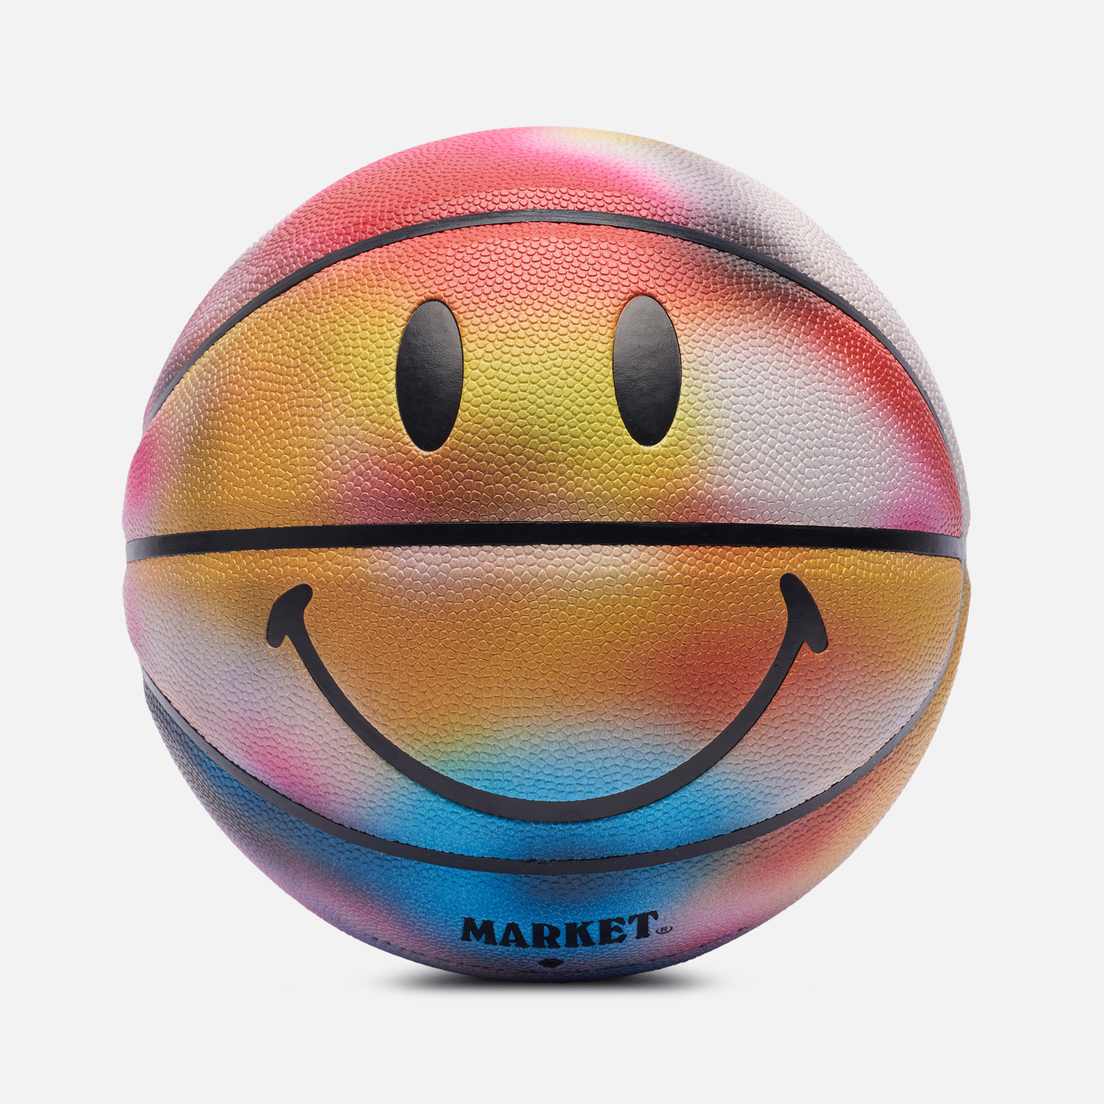 MARKET Баскетбольный мяч Smiley Near Sighted